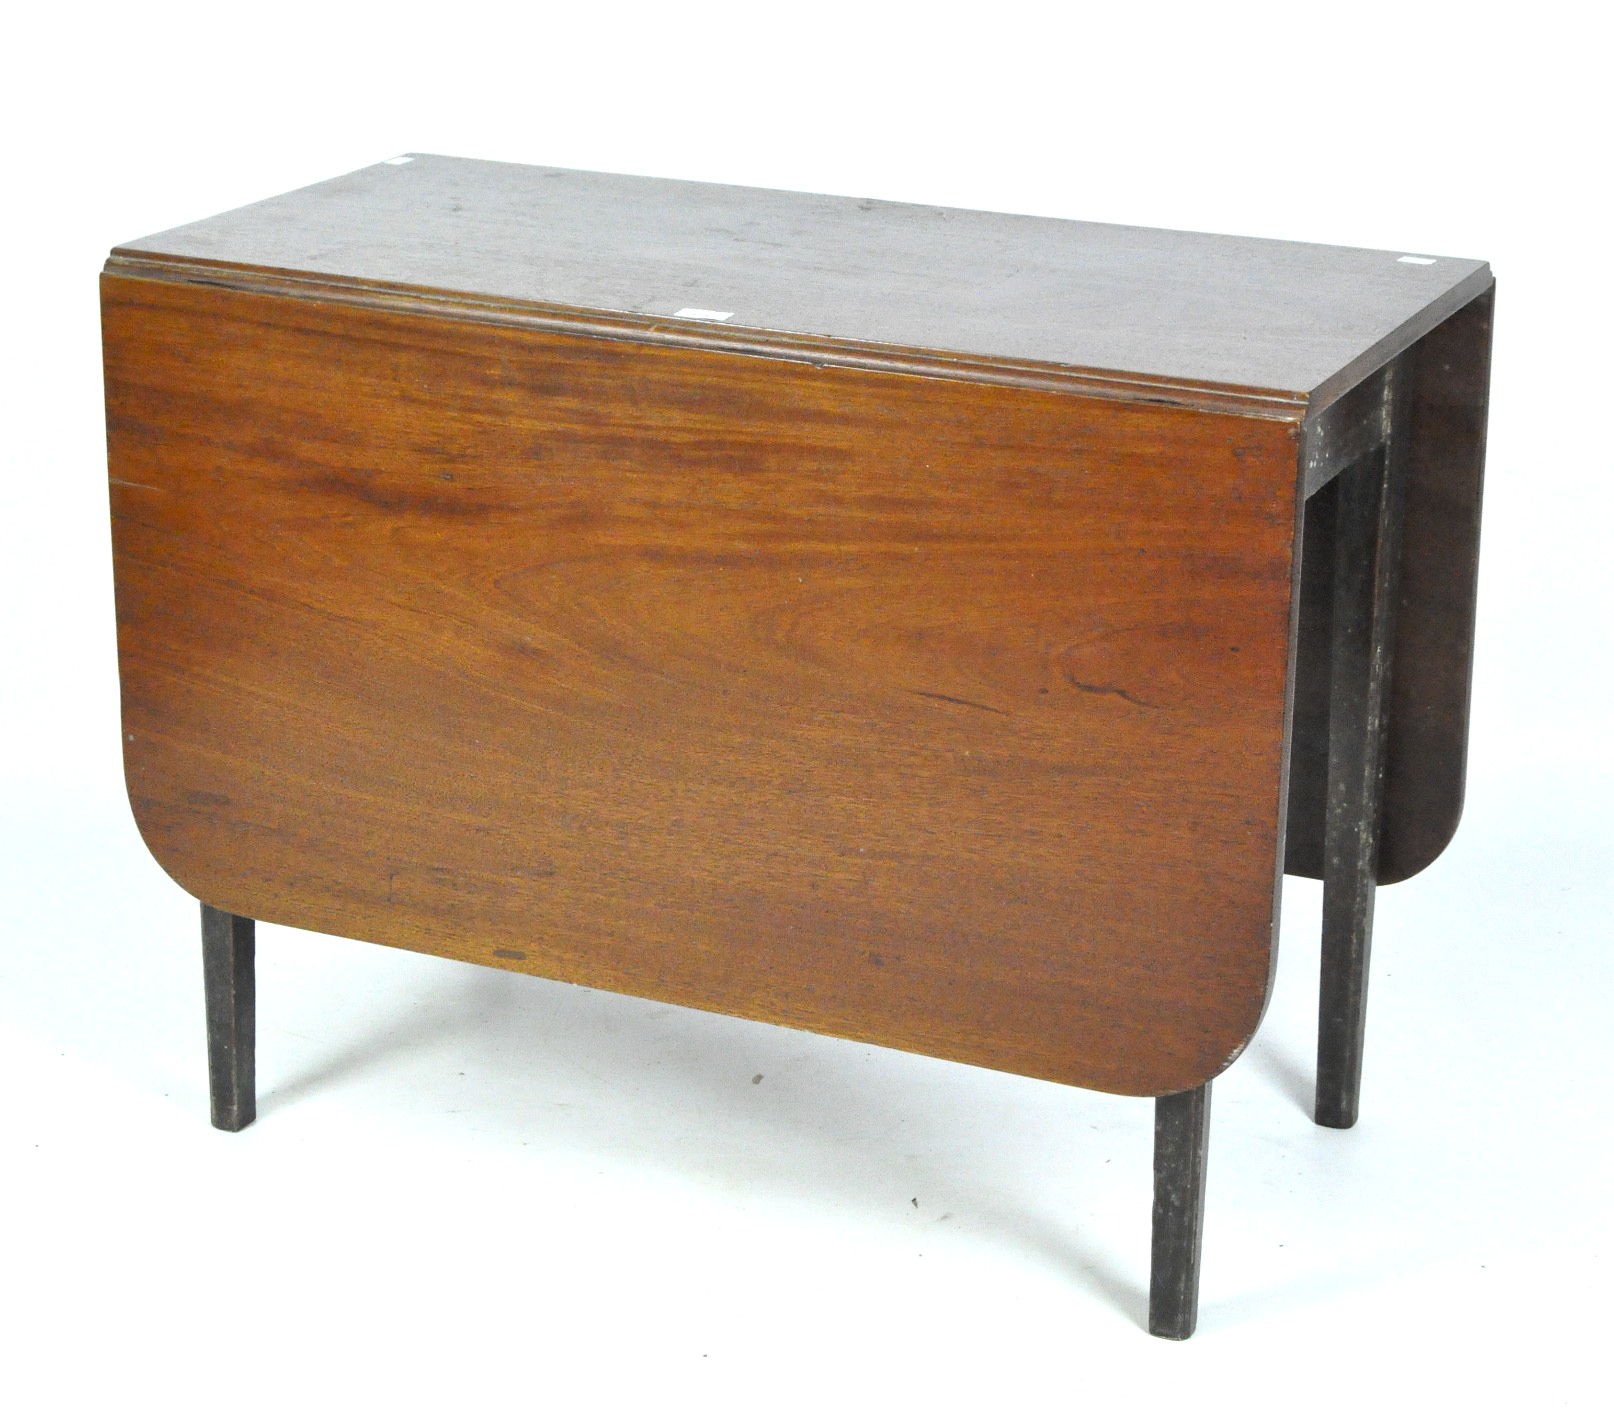 A 20th century mahogany Pembroke table,